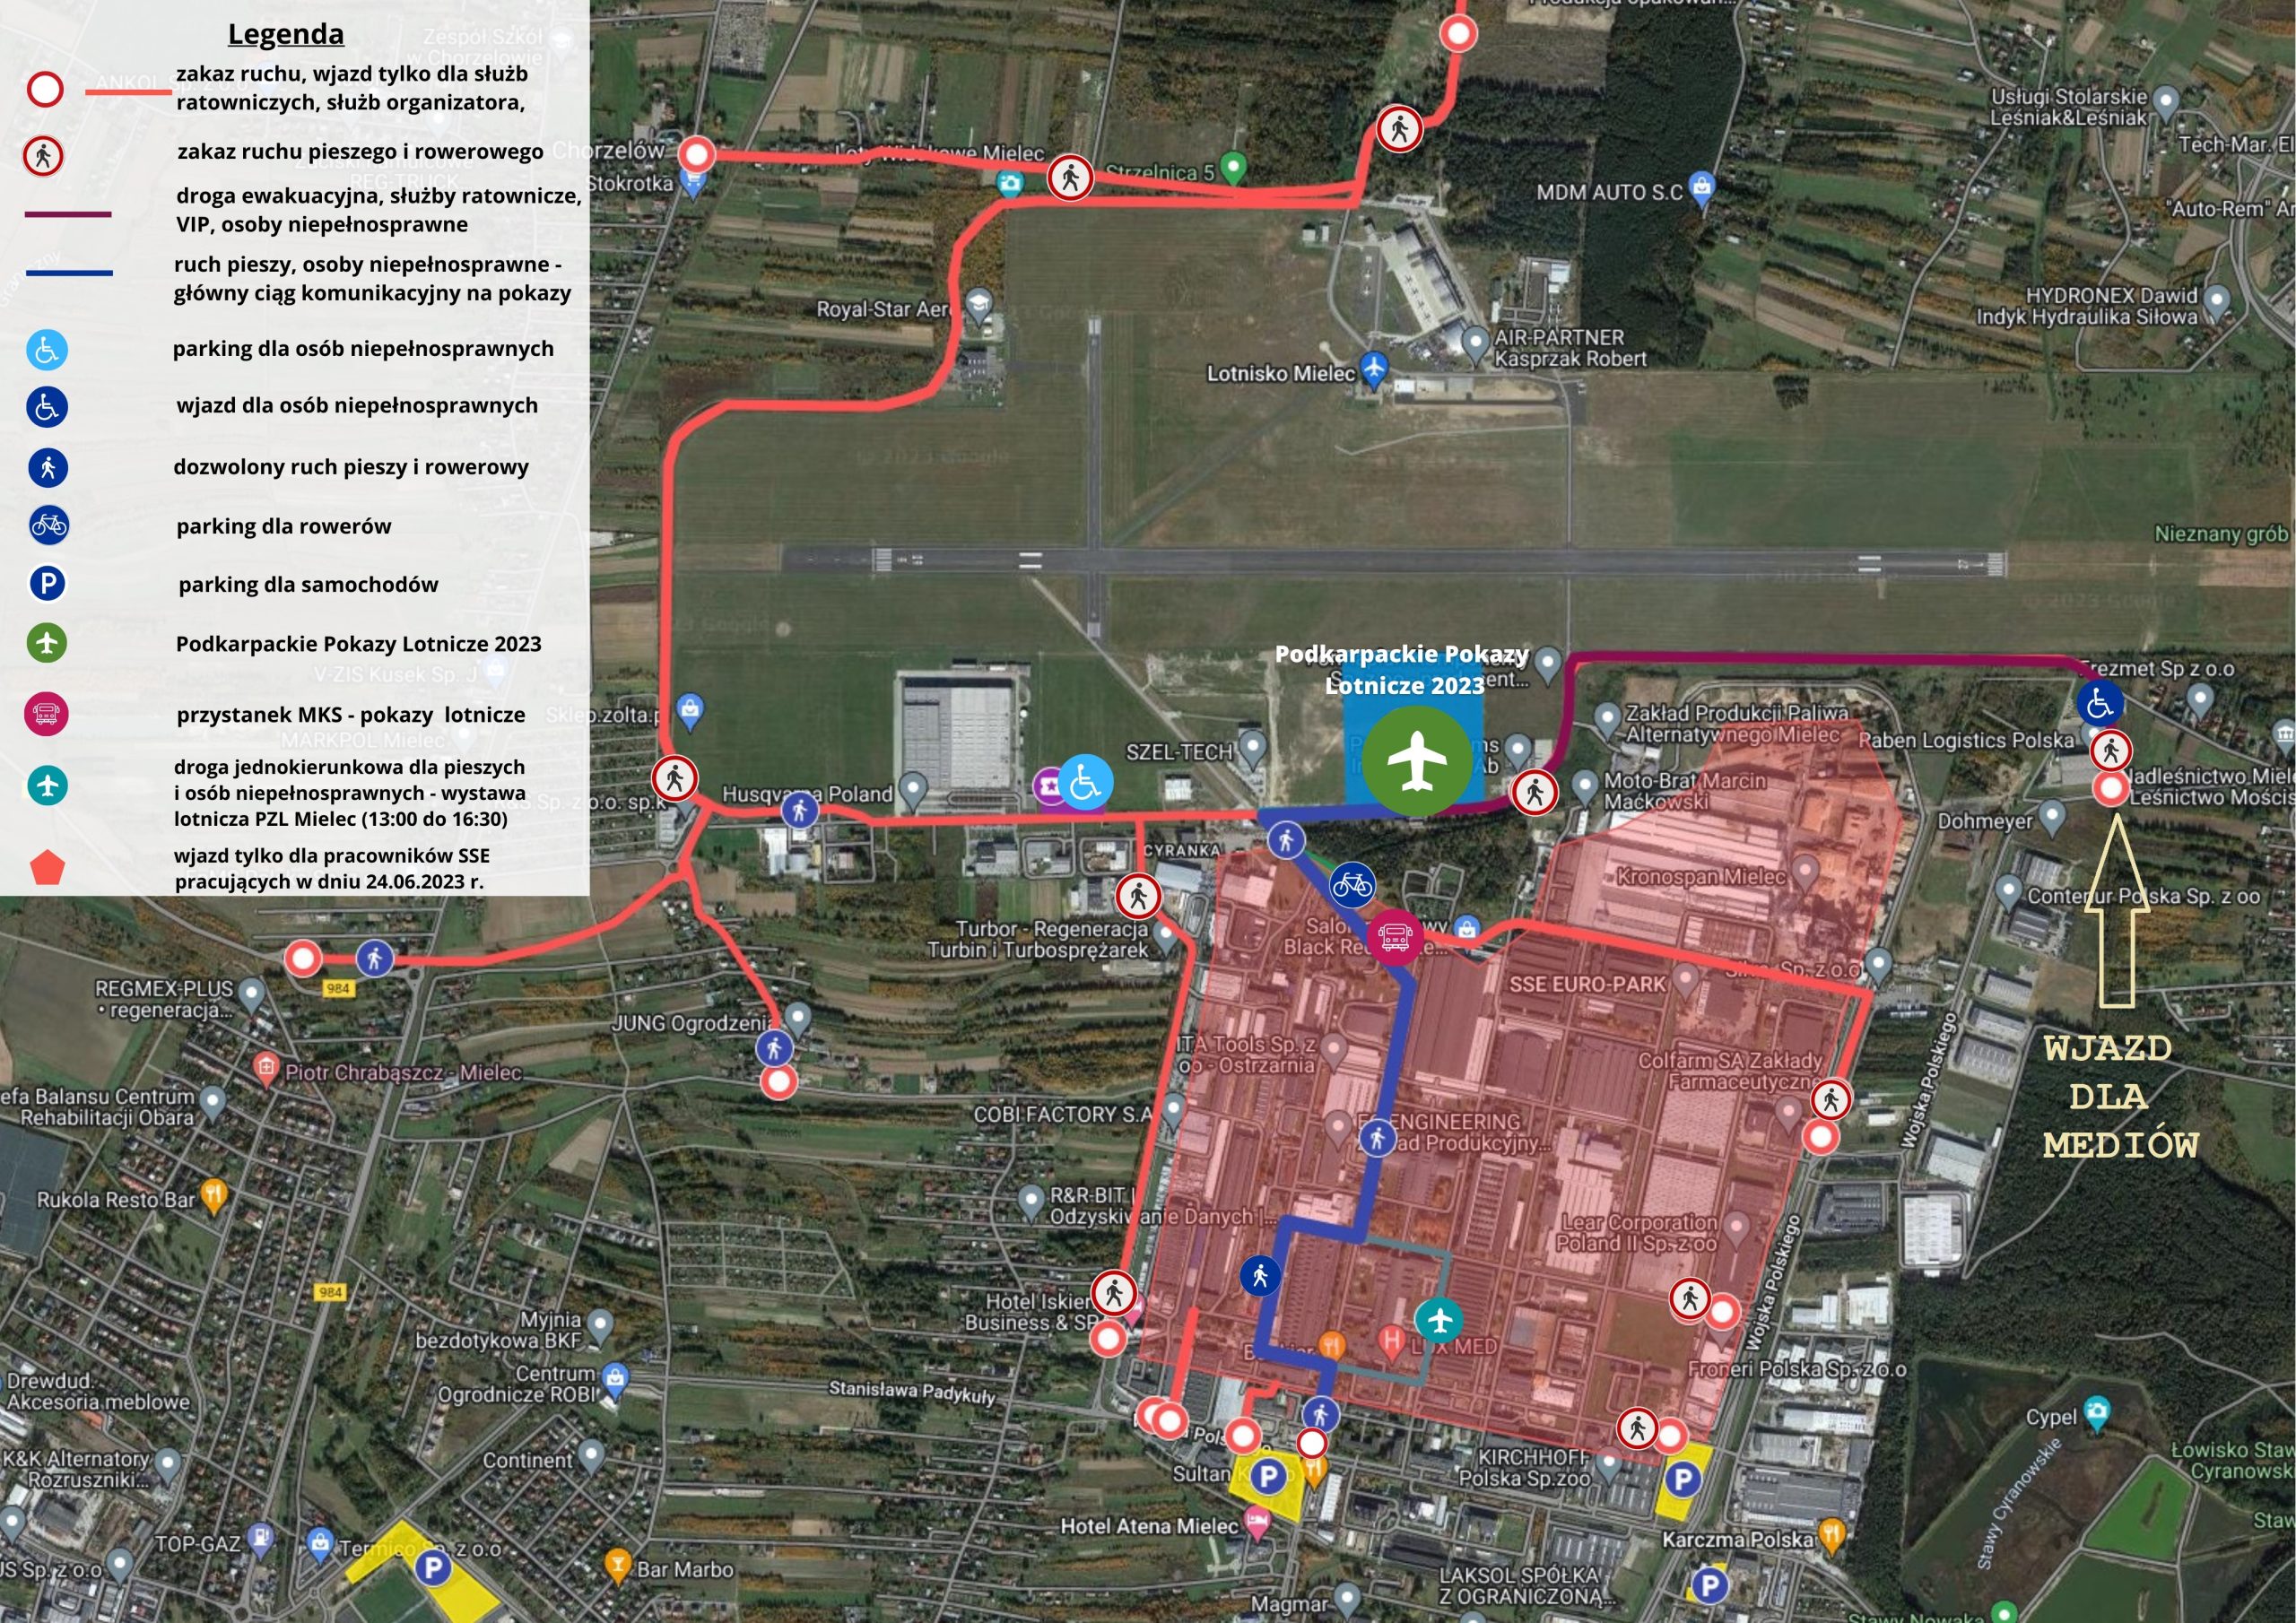 Mapa satelitarna z zaznaczoną organizacją ruchu oraz parkingami podczas IV Podkarpackich Pokazów Lotniczych. Szczegóły opisane w artykule.